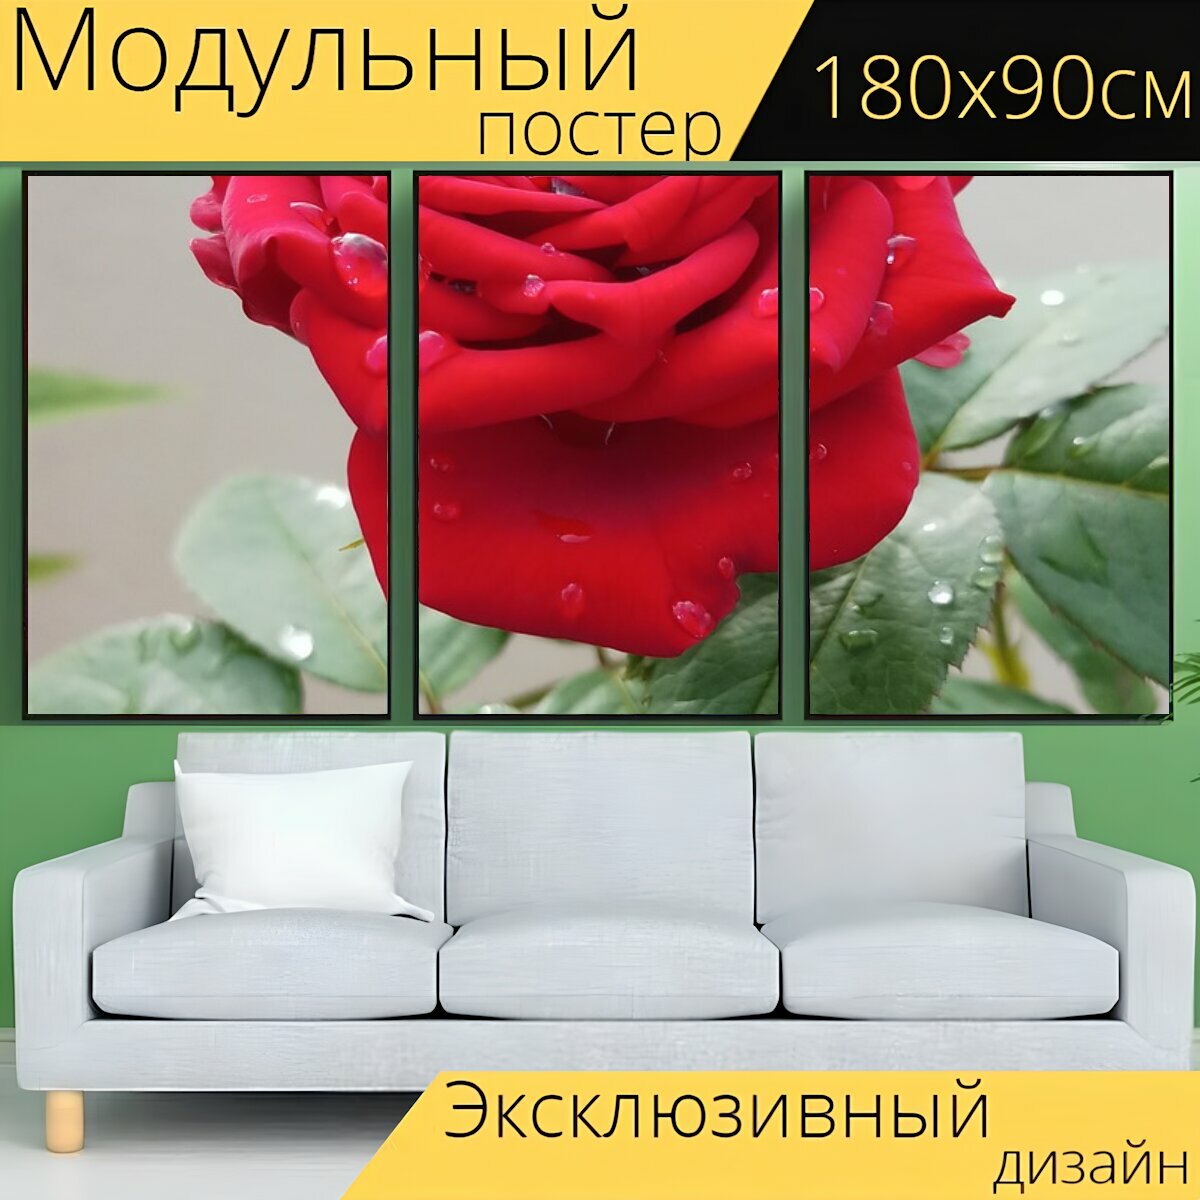 Модульный постер "Красный, красная роза, цветок" 180 x 90 см. для интерьера